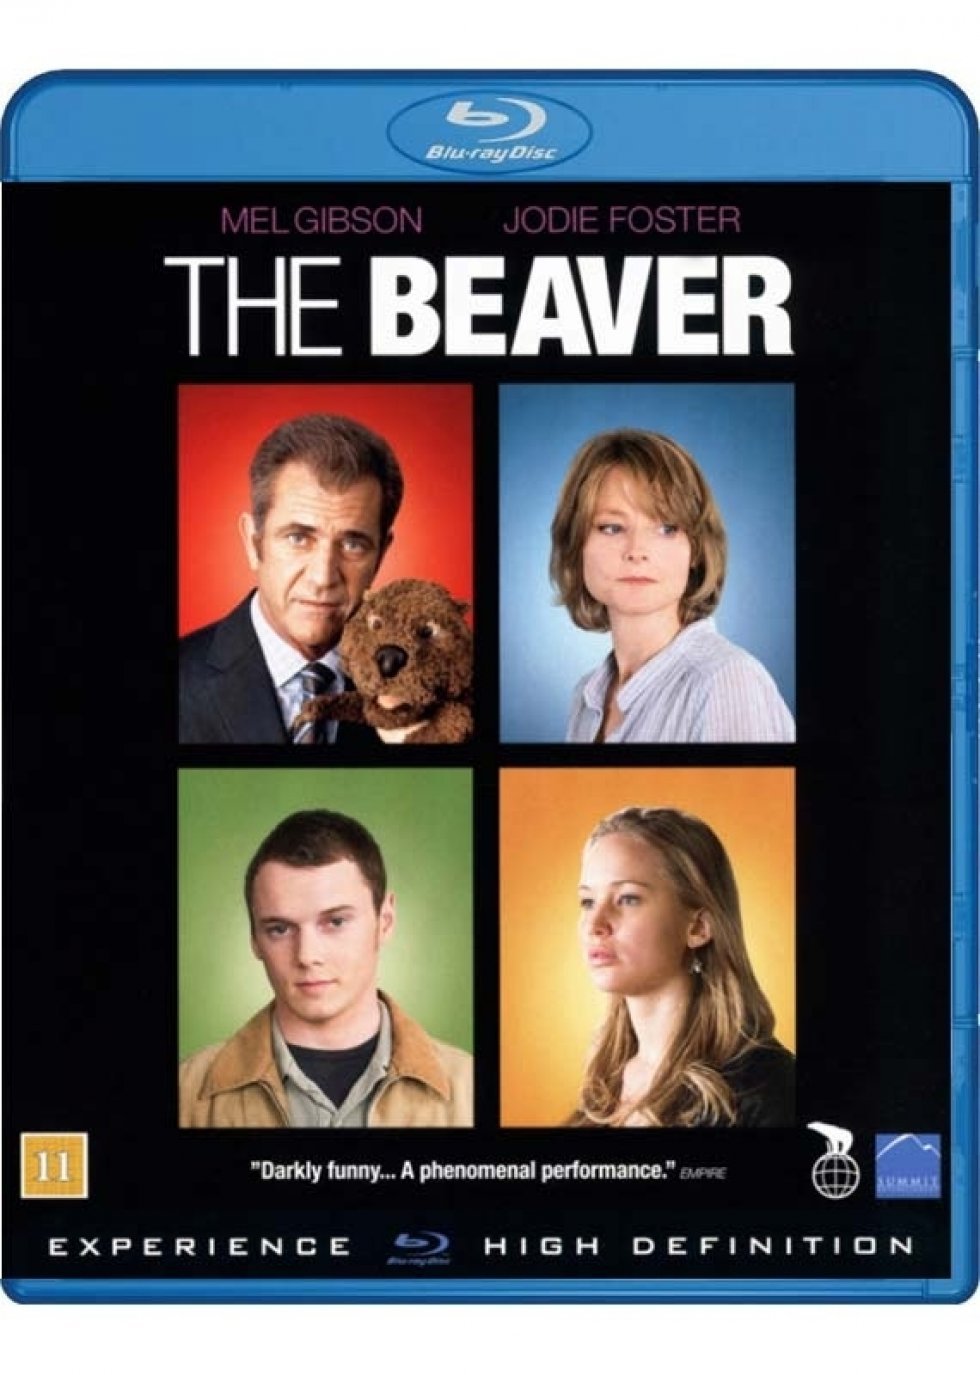 The Beaver - et stk. Mel Gibson og hans bæver